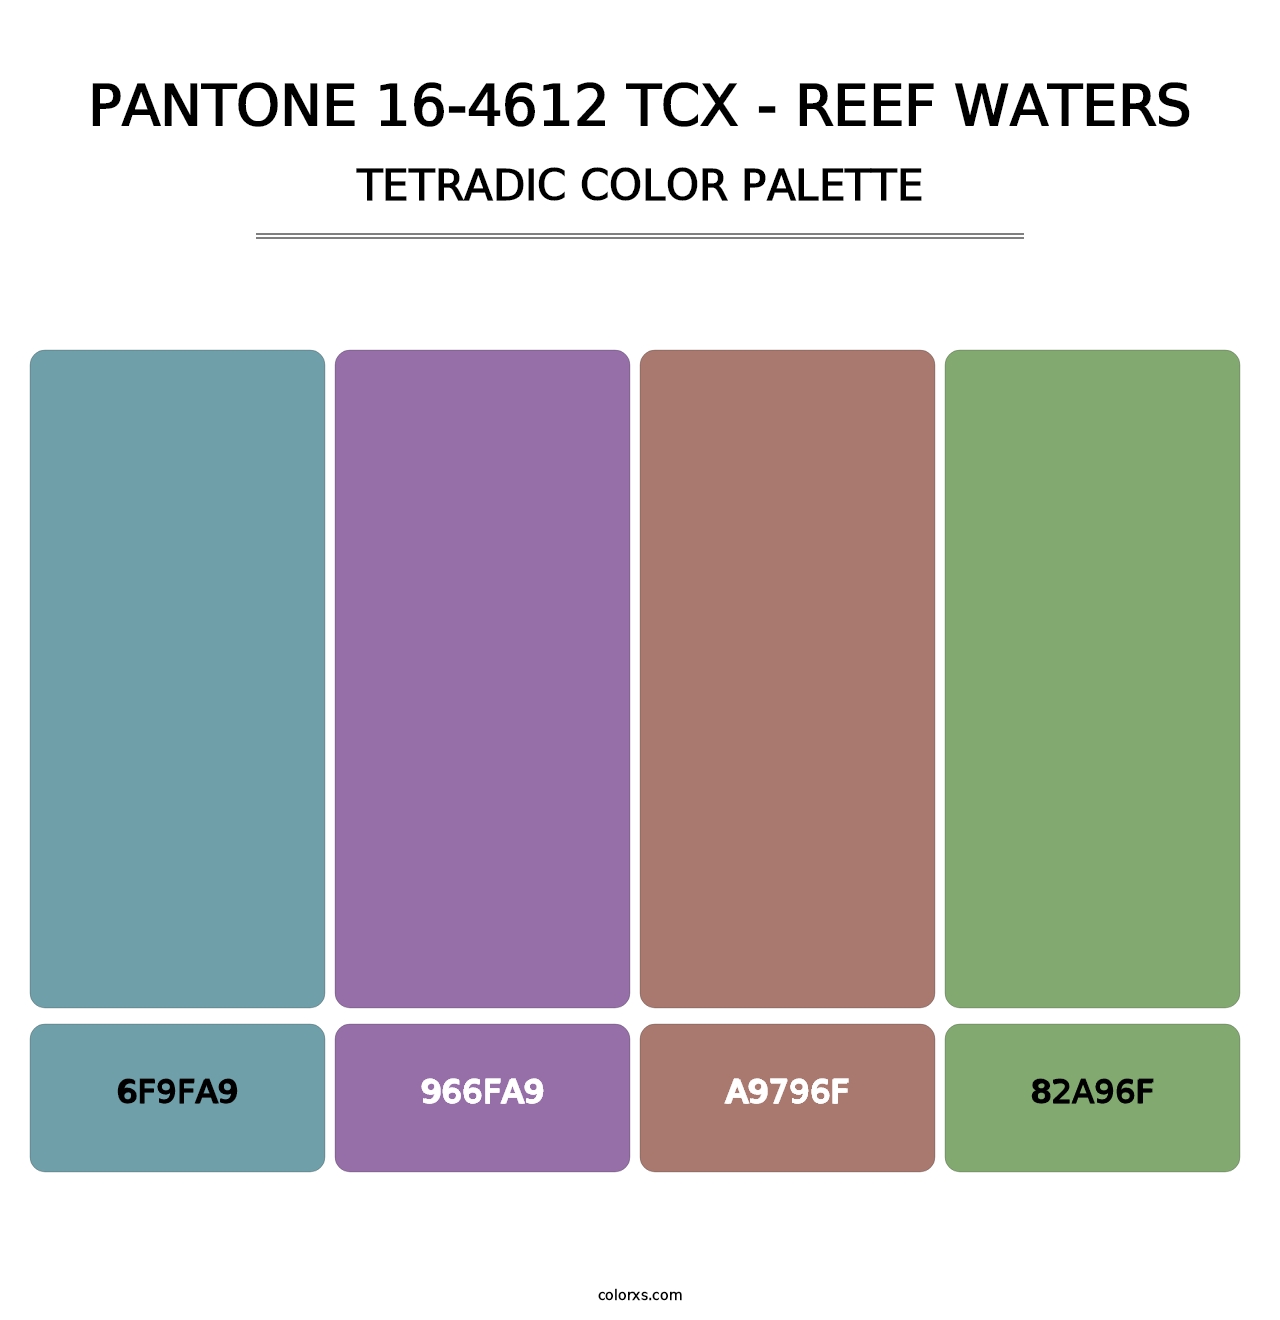 PANTONE 16-4612 TCX - Reef Waters - Tetradic Color Palette